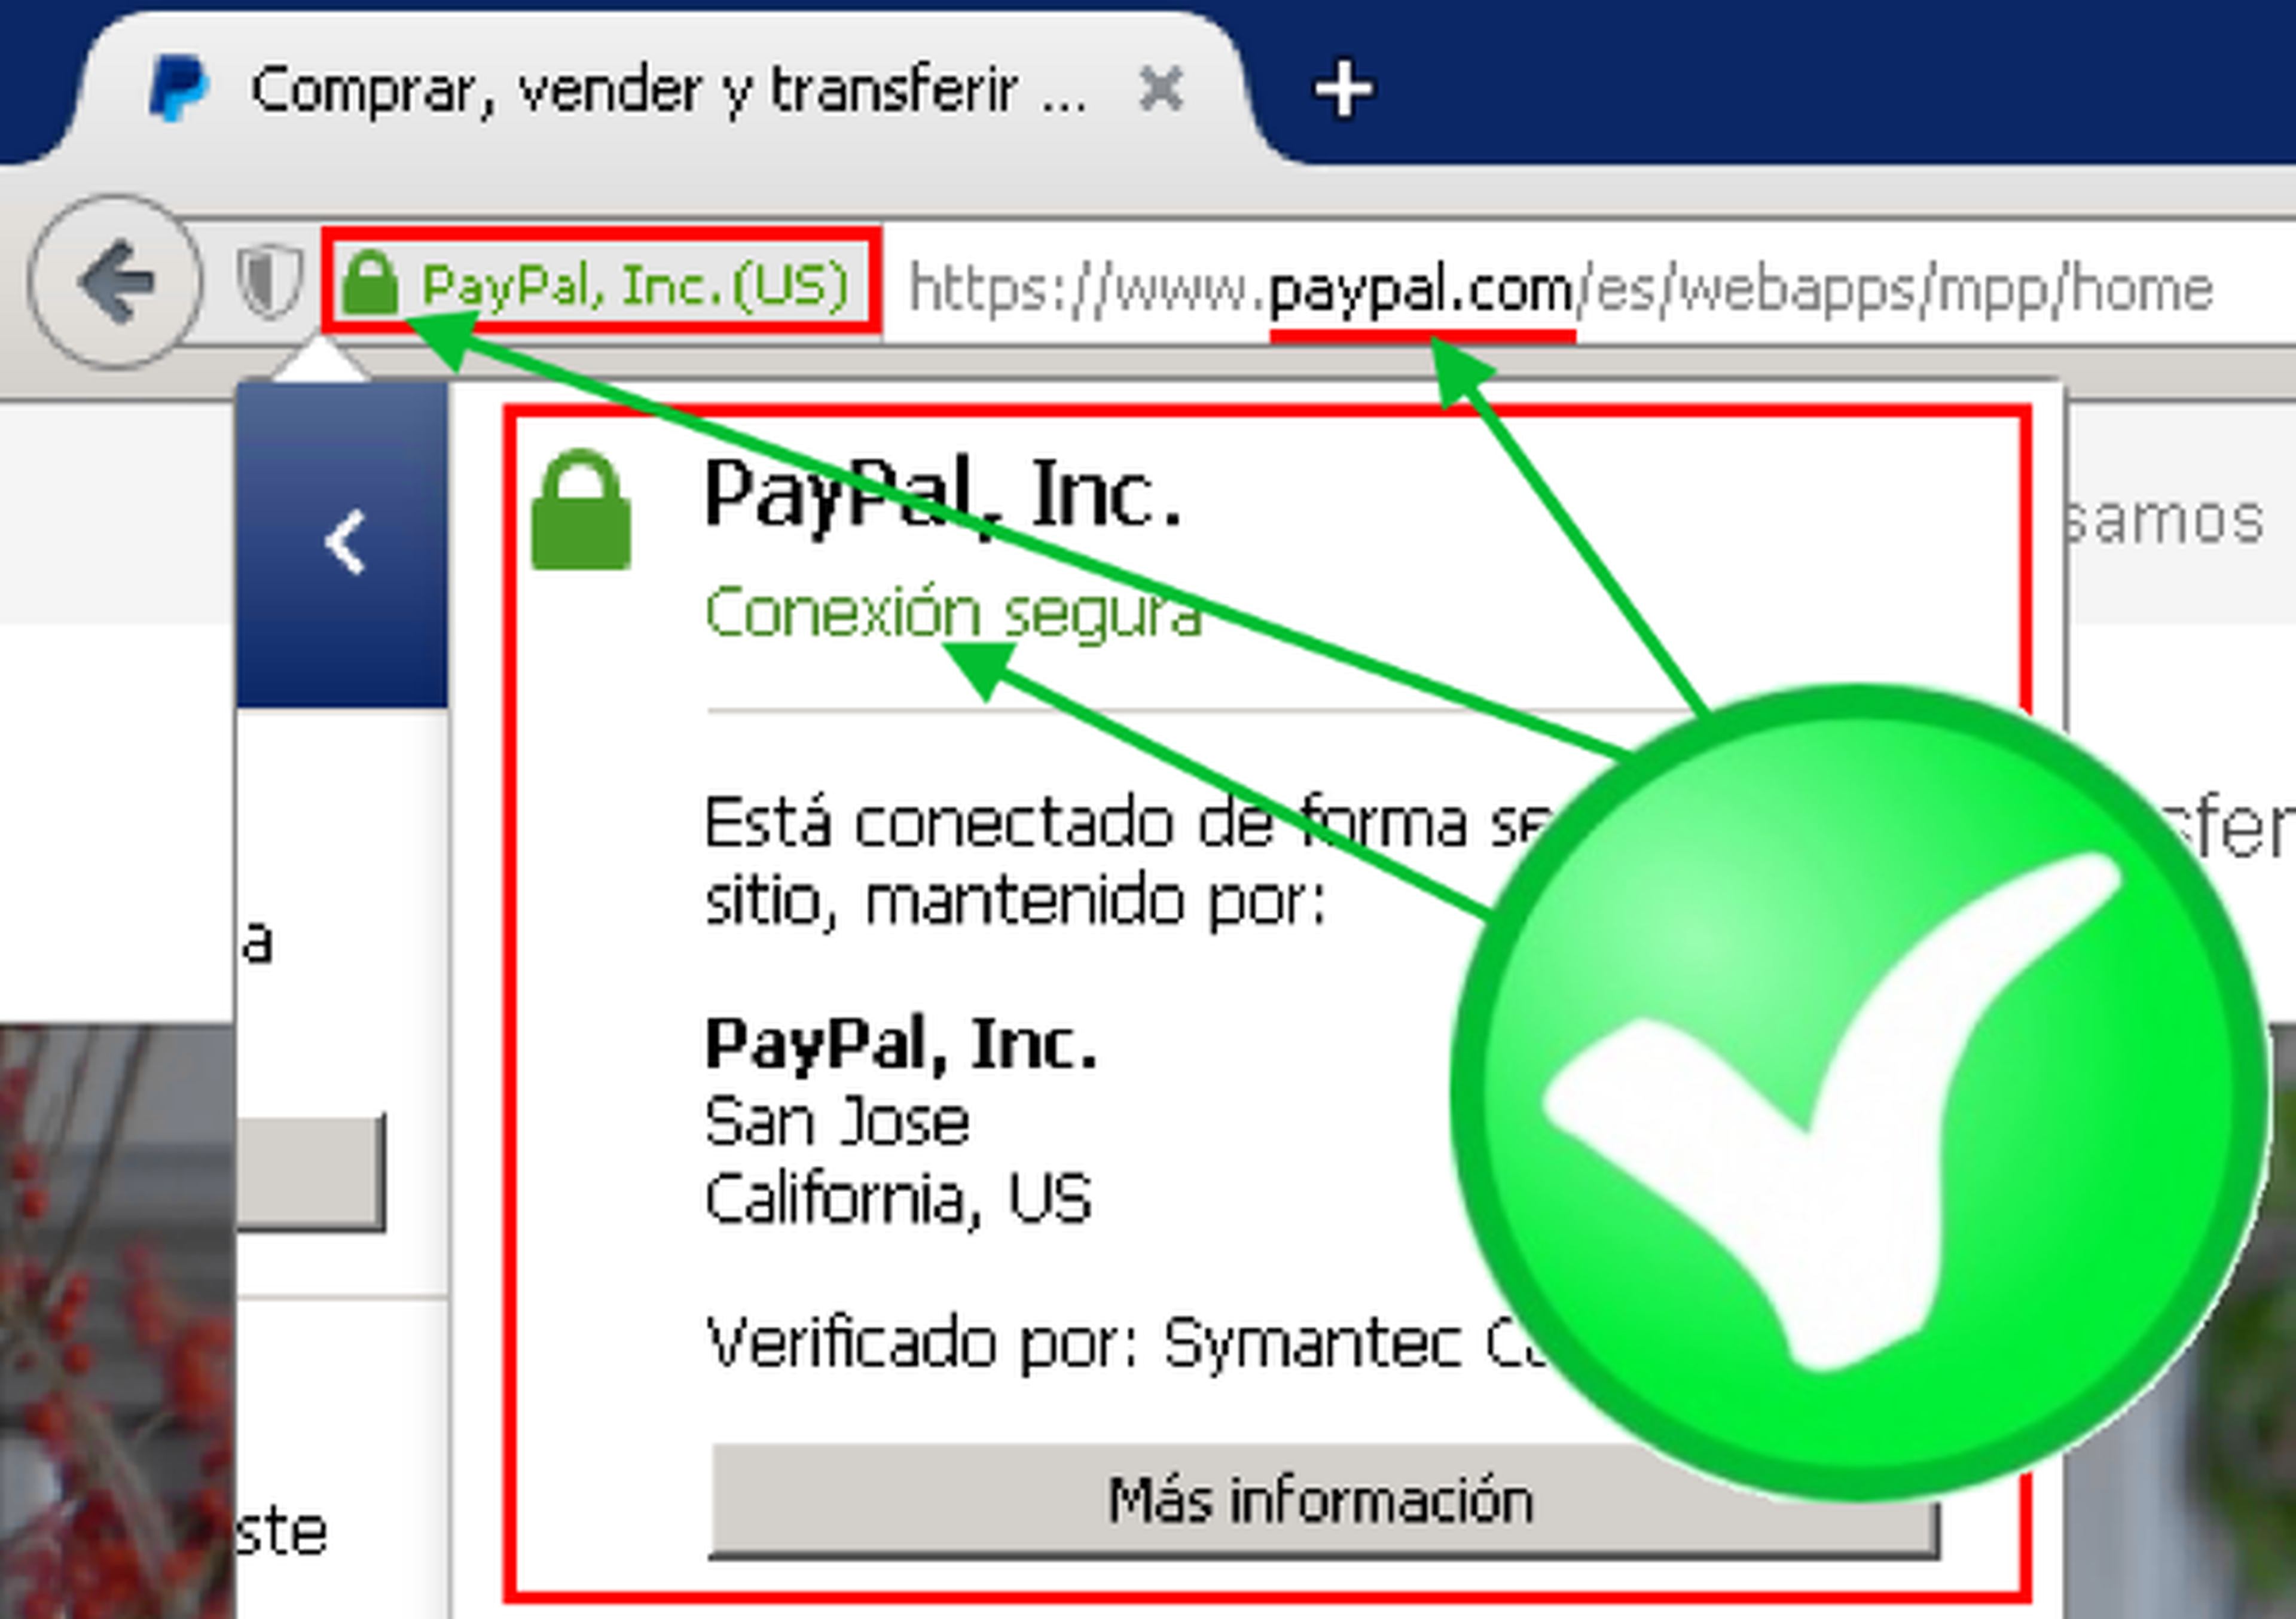 Campaña de phishing de Paypal